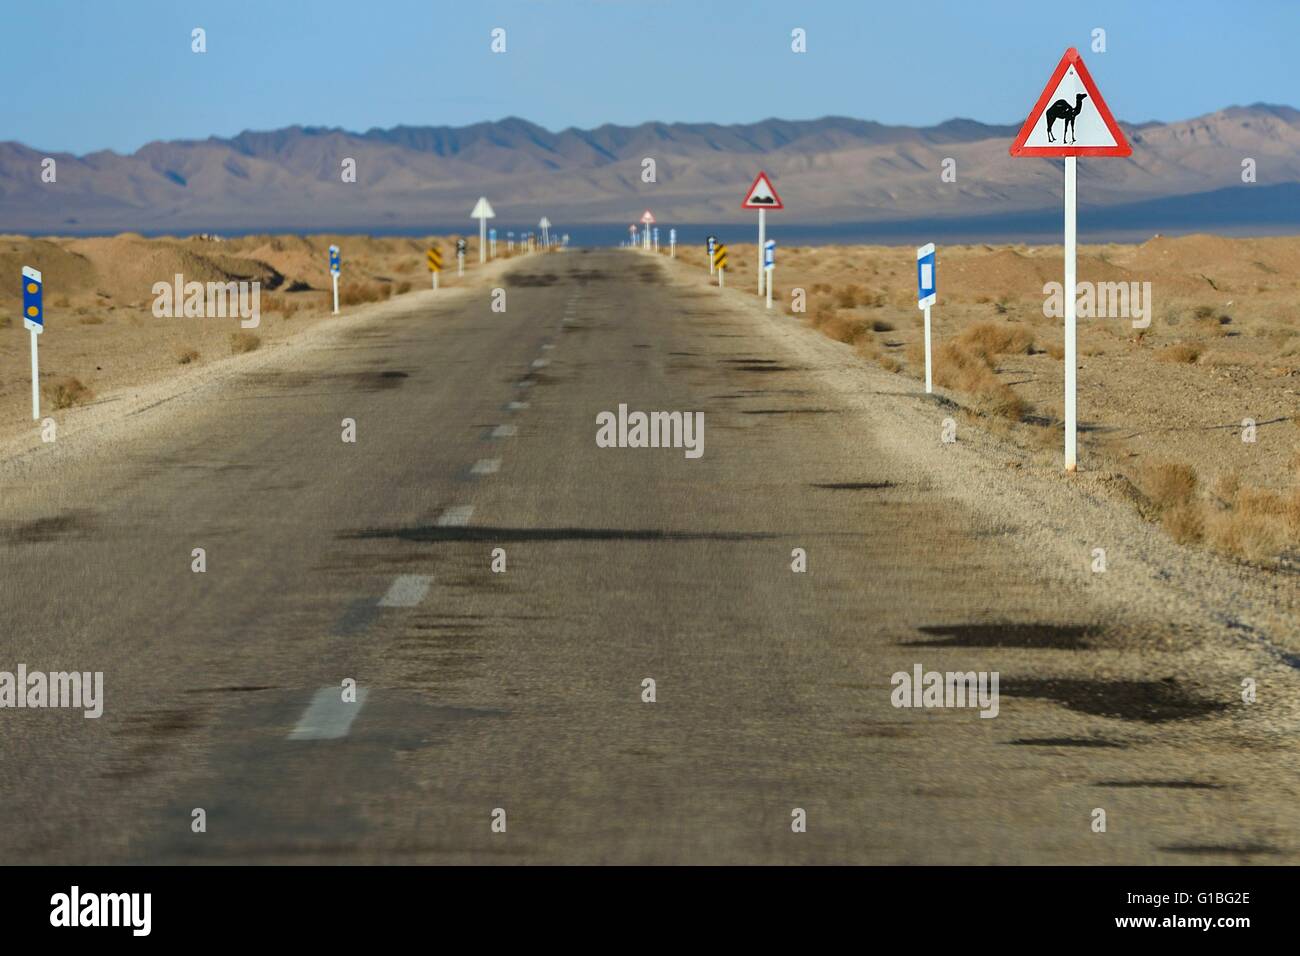 Provinz Isfahan, Iran, Straße von Khur Mesr, Kamel durchqueren Zeichen, Kamele, Dasht-e Kavir Wüste sind verantwortlich für viele Unfälle im Straßenverkehr, vor allem nachts Stockfoto